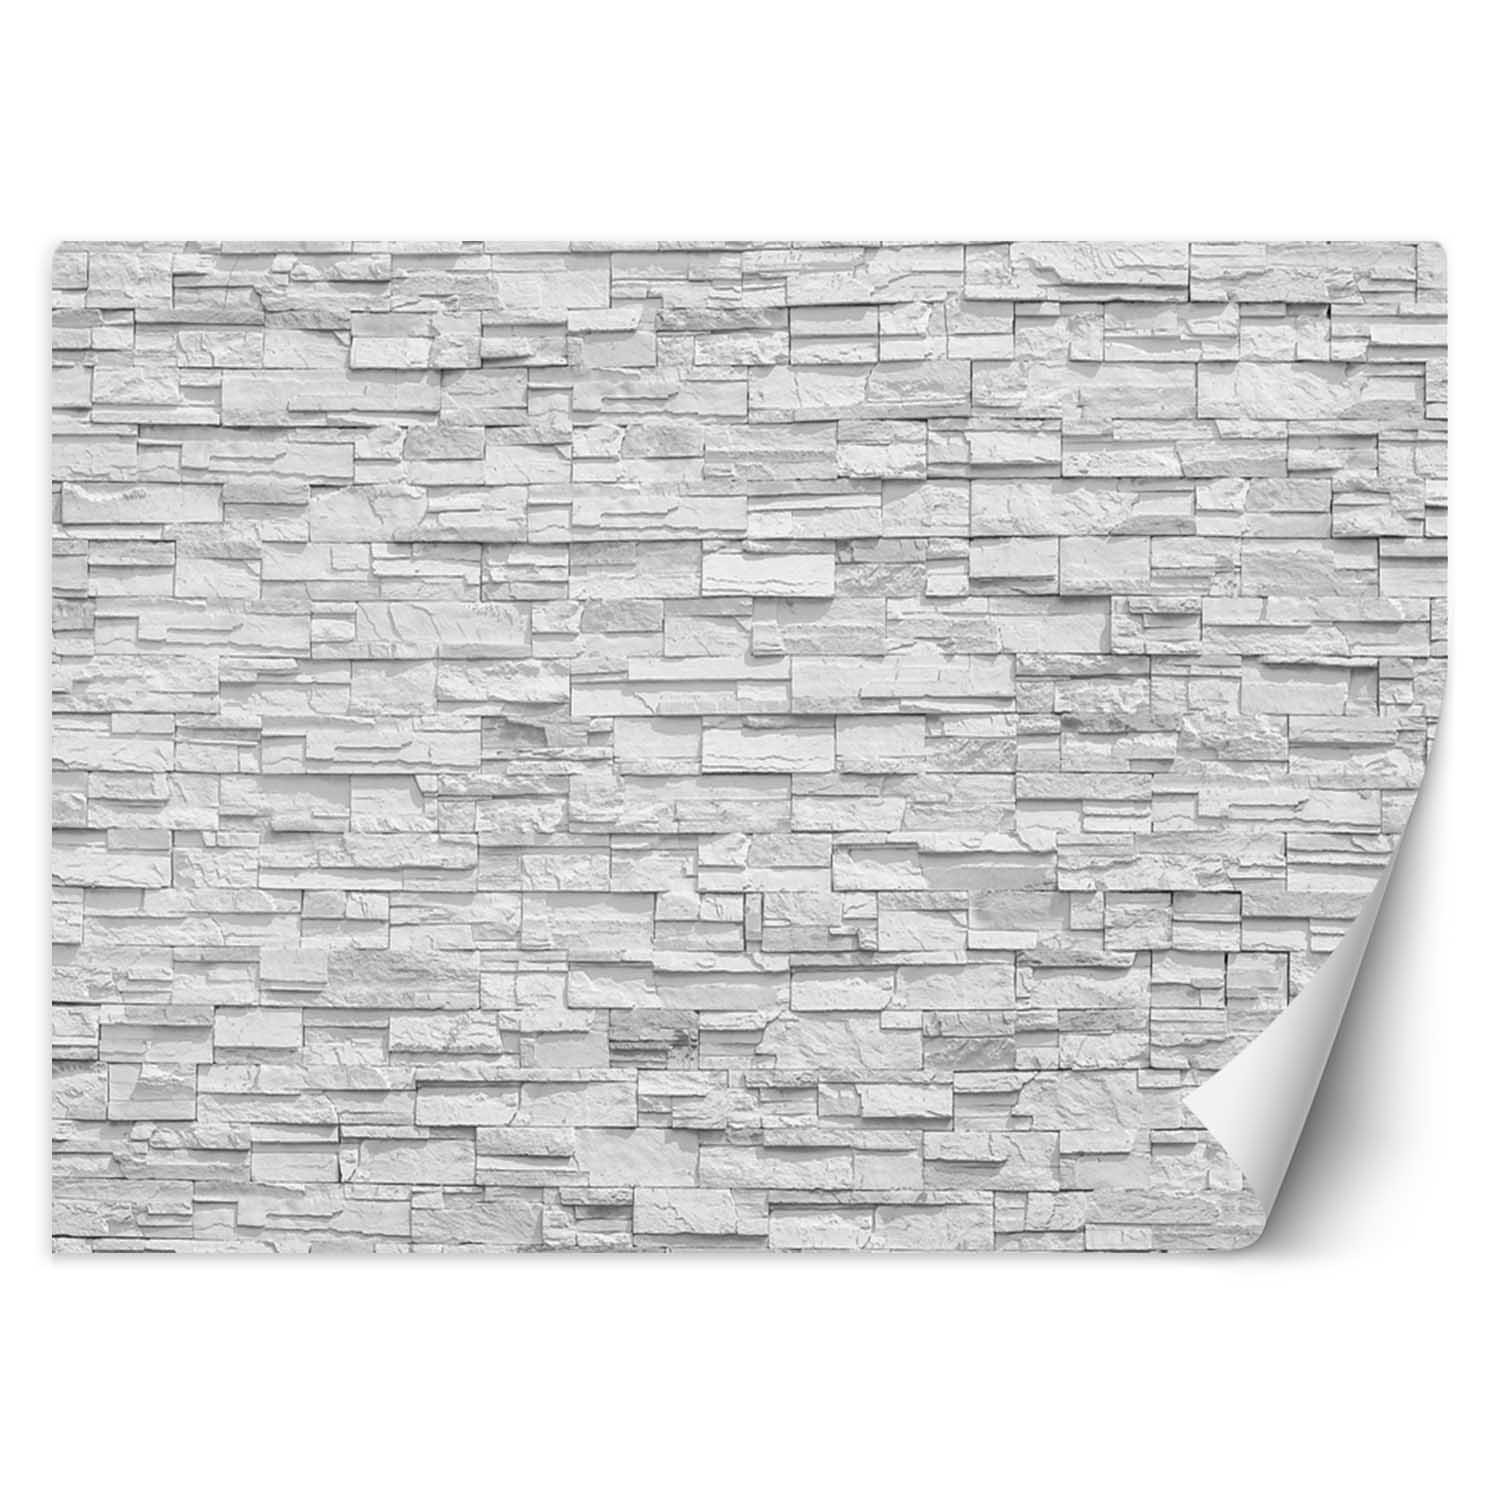 Trend24 – Behang – Witte Stenen Muur – Behangpapier – Behang Woonkamer – Fotobehang – 400x280x2 cm – Incl. behanglijm